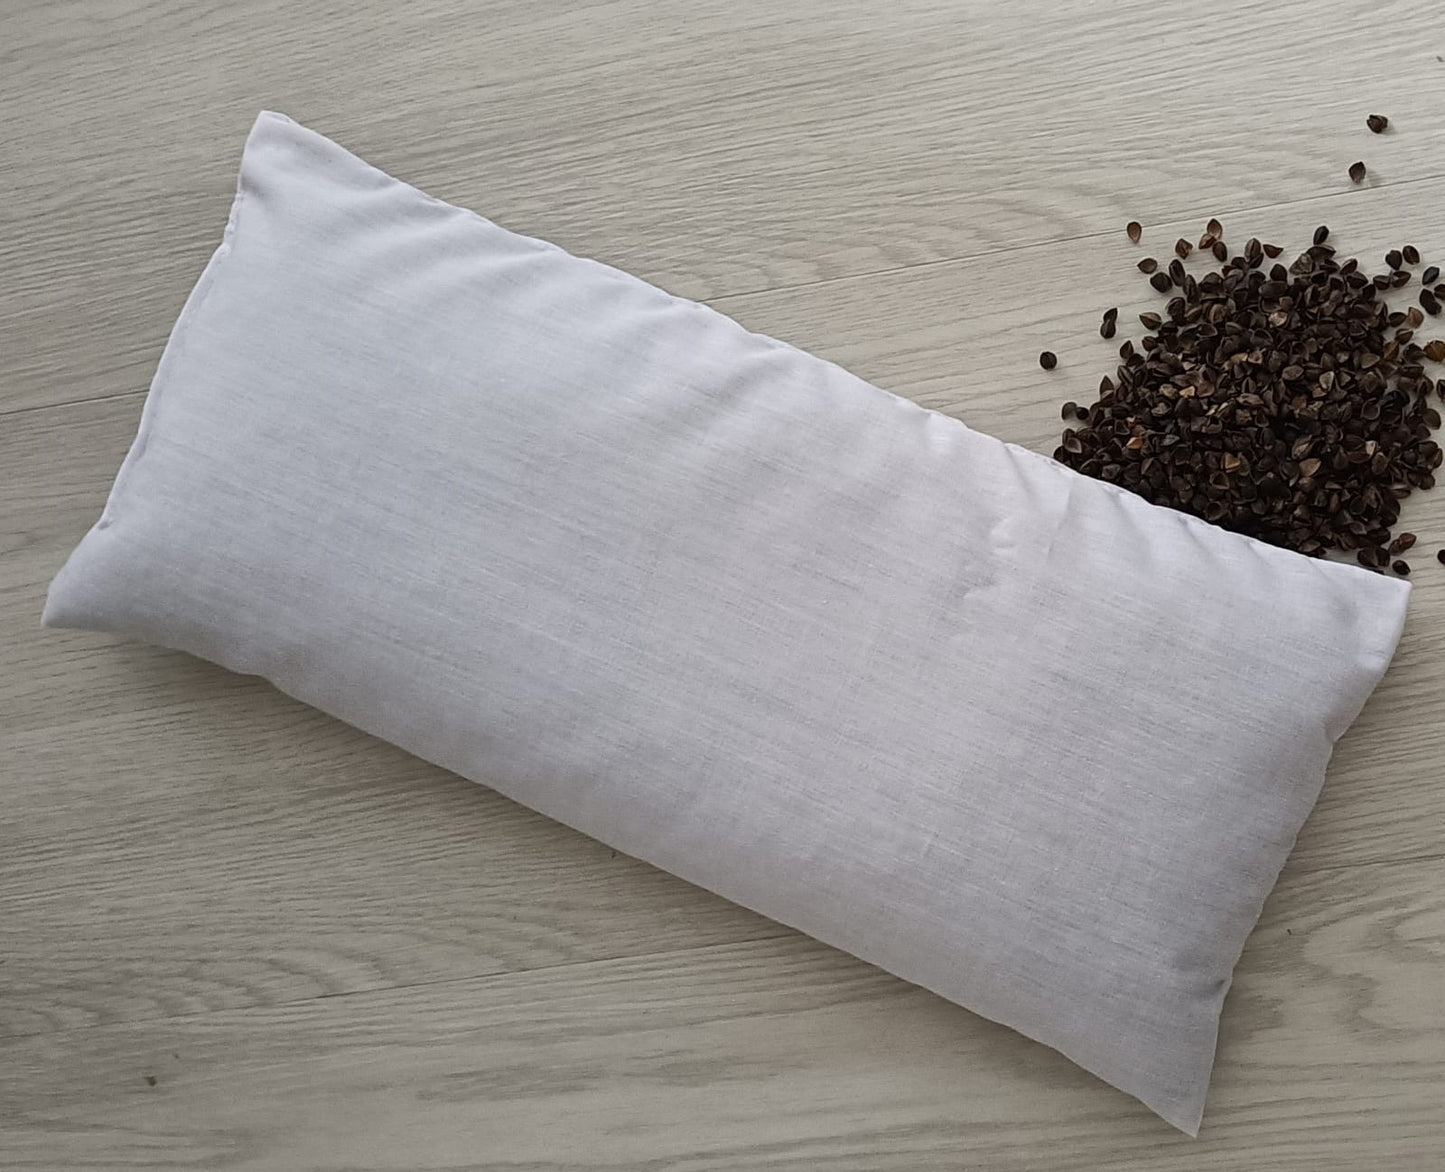 Buckwheat Pillow